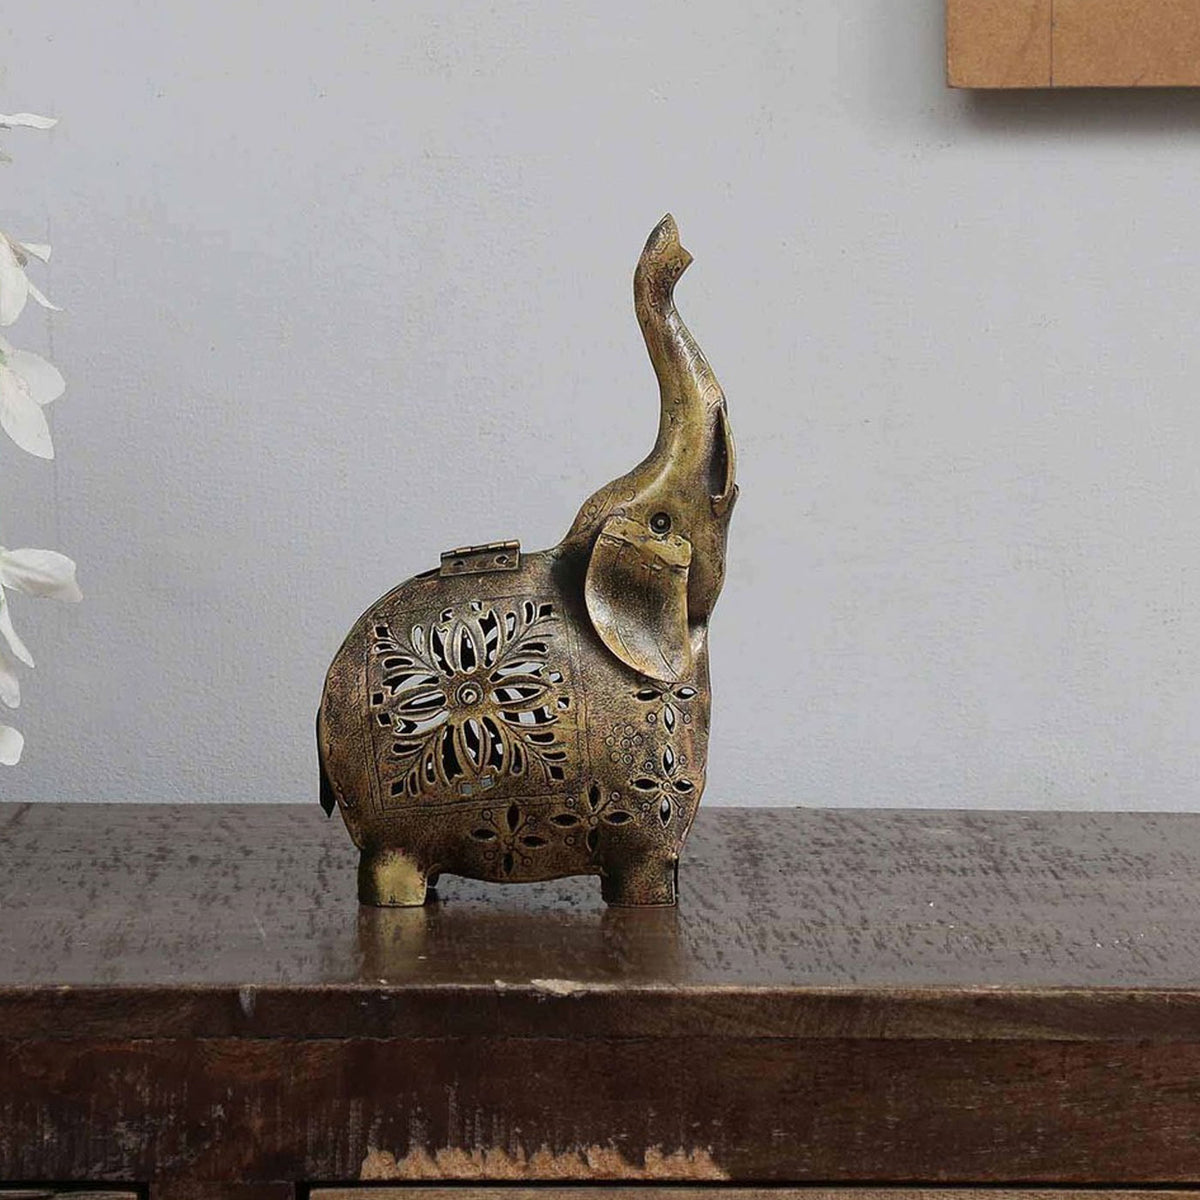 Elephant Animal Figurine